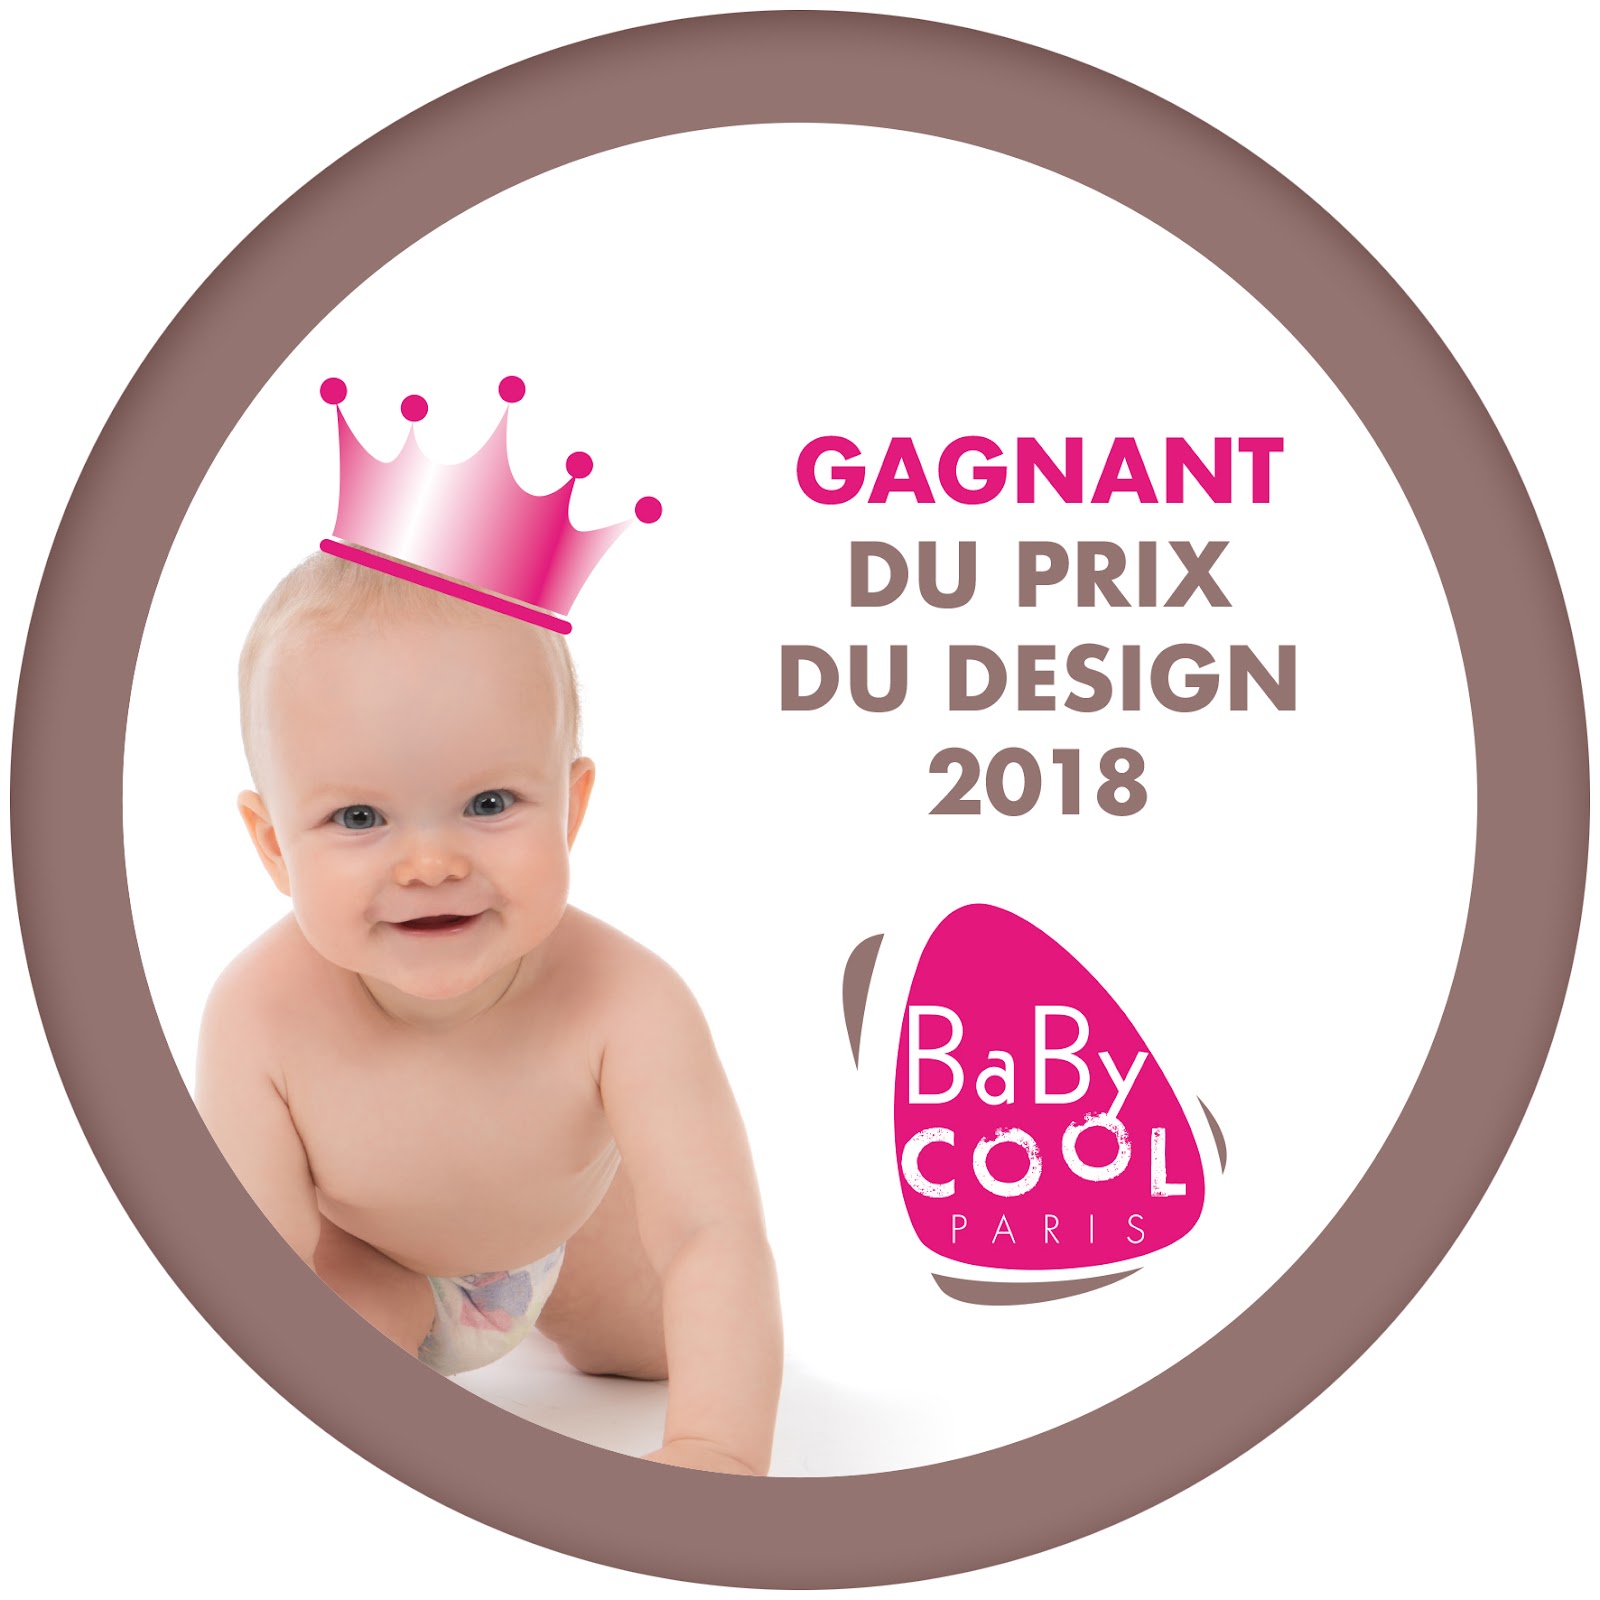 Gagnant du prix design 2018 - baby cool